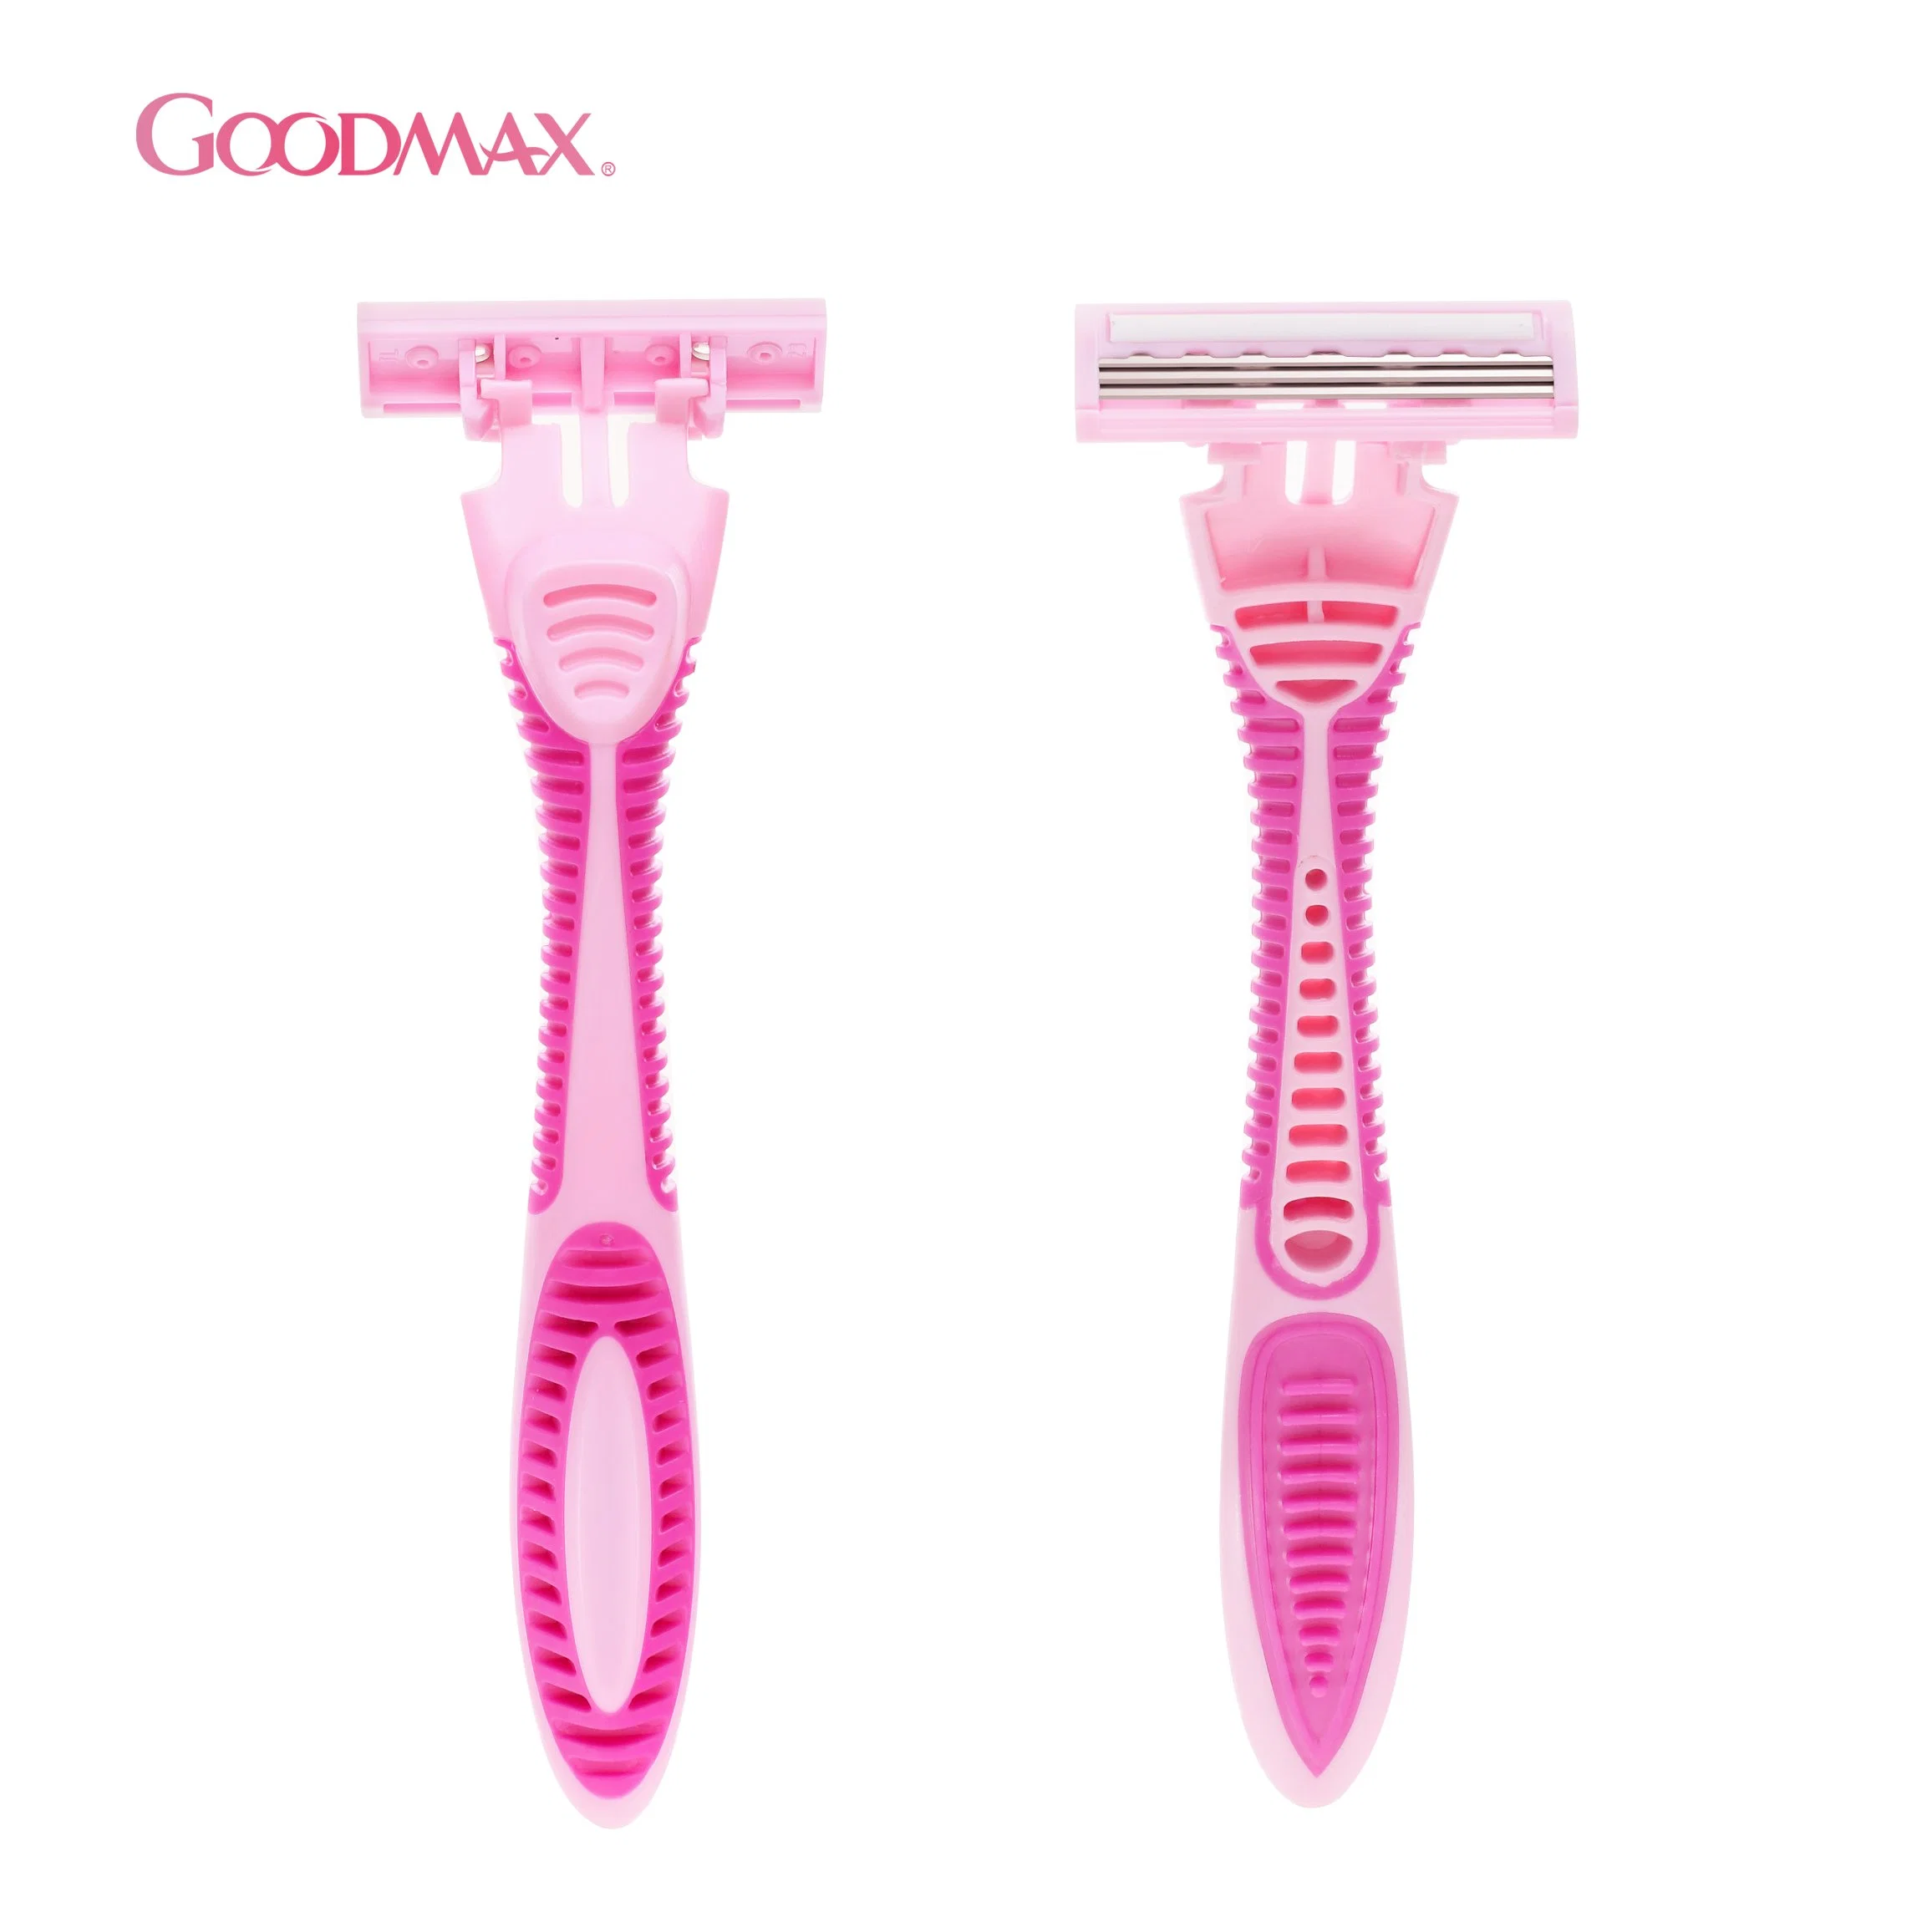 Afeitadora de afeitado desechable de gran forma con triple cuchilla para mujer (Goodmax)